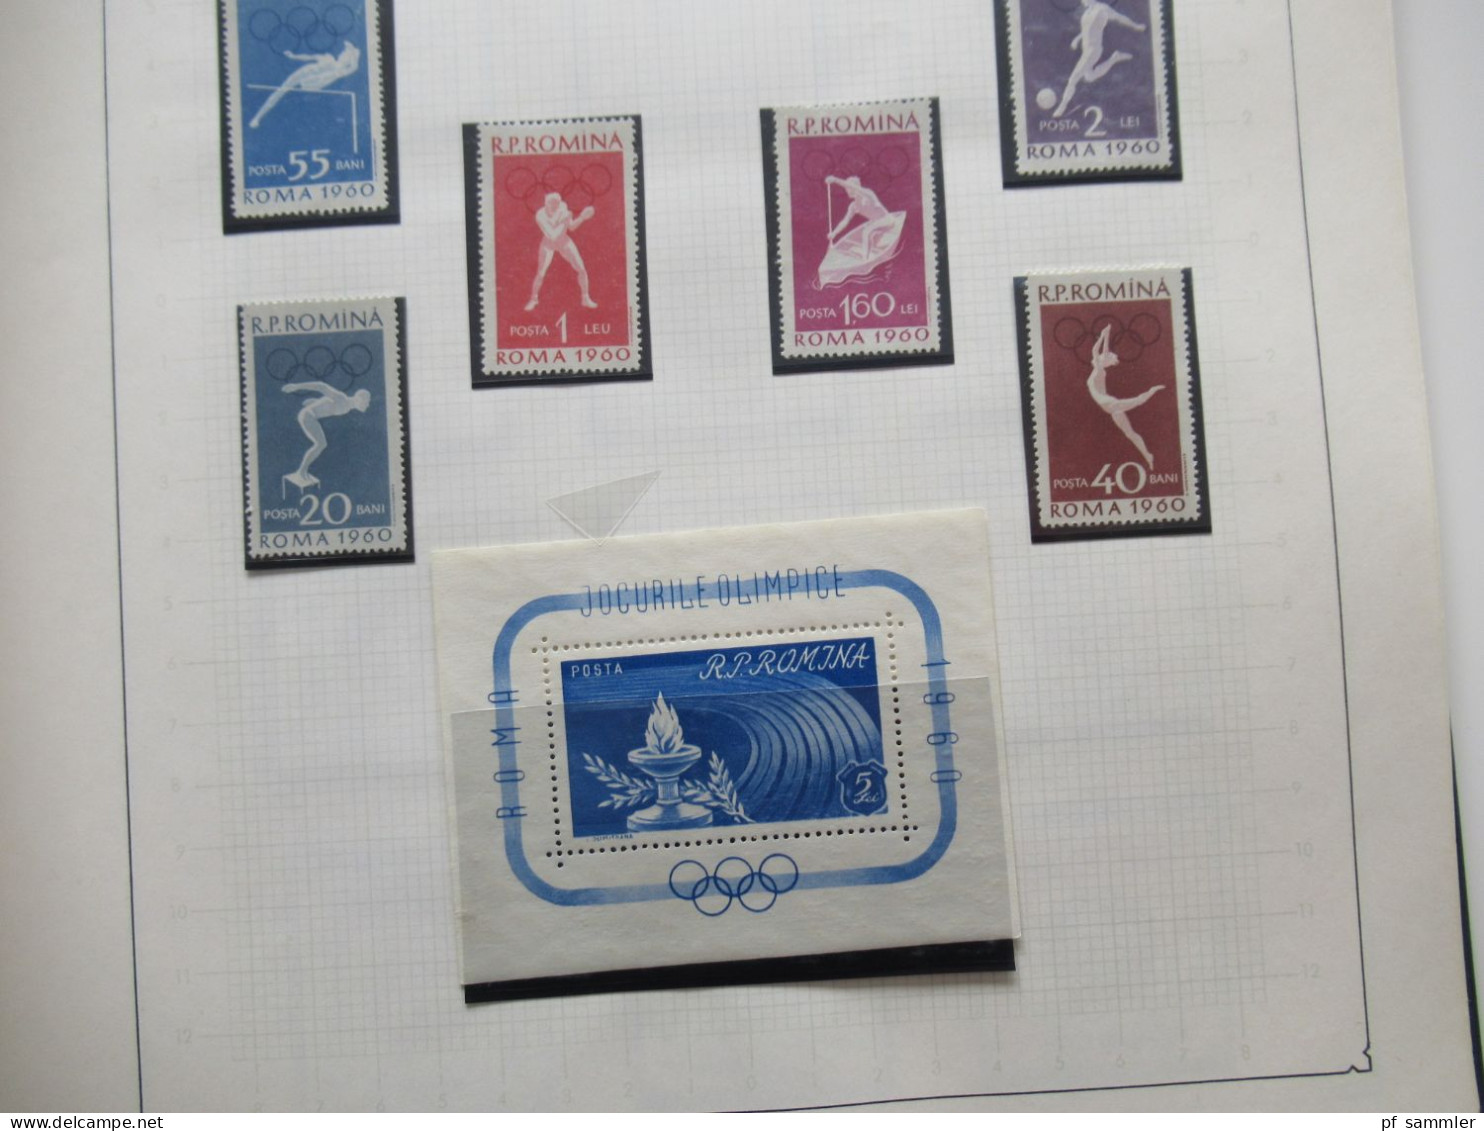 Tolle Motivsammlung Sport / Olympia mit Marken der 1960er Jahre! Auch etl. ungezähnte Ausgaben und 2x DR Olympia Block